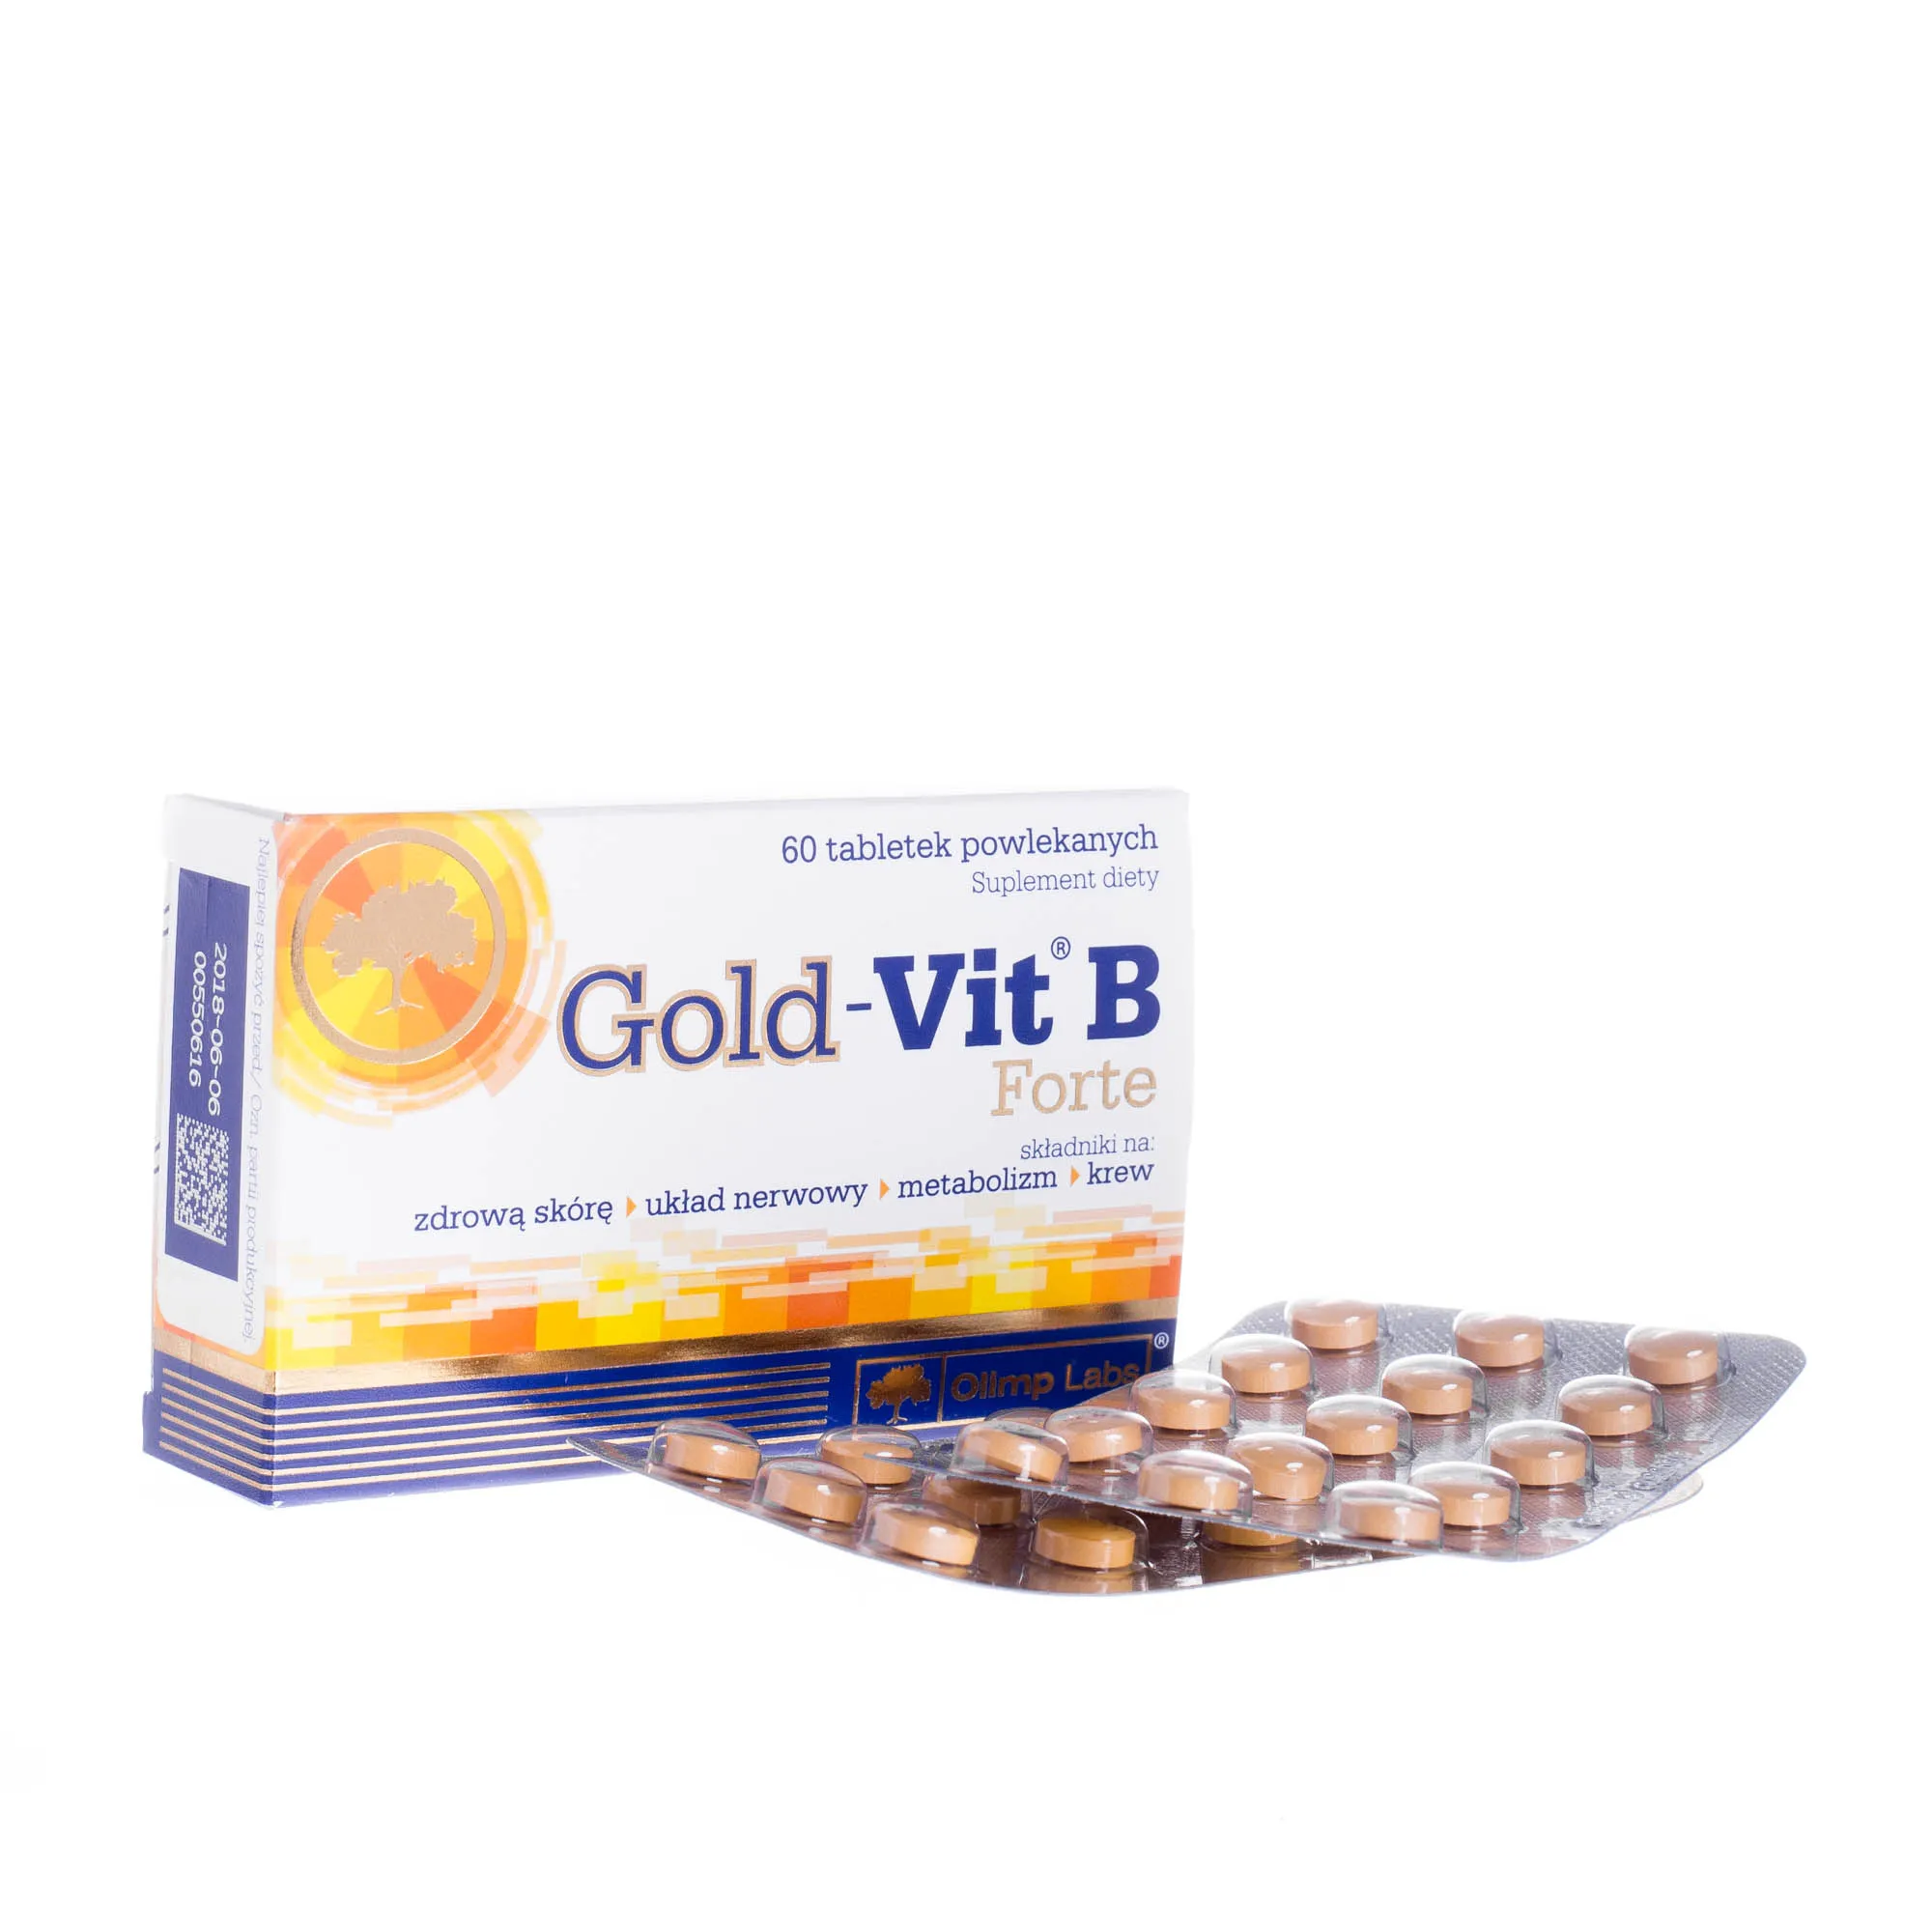 Olimp Gold-Vit B Forte, suplement diety, 60 tabletek